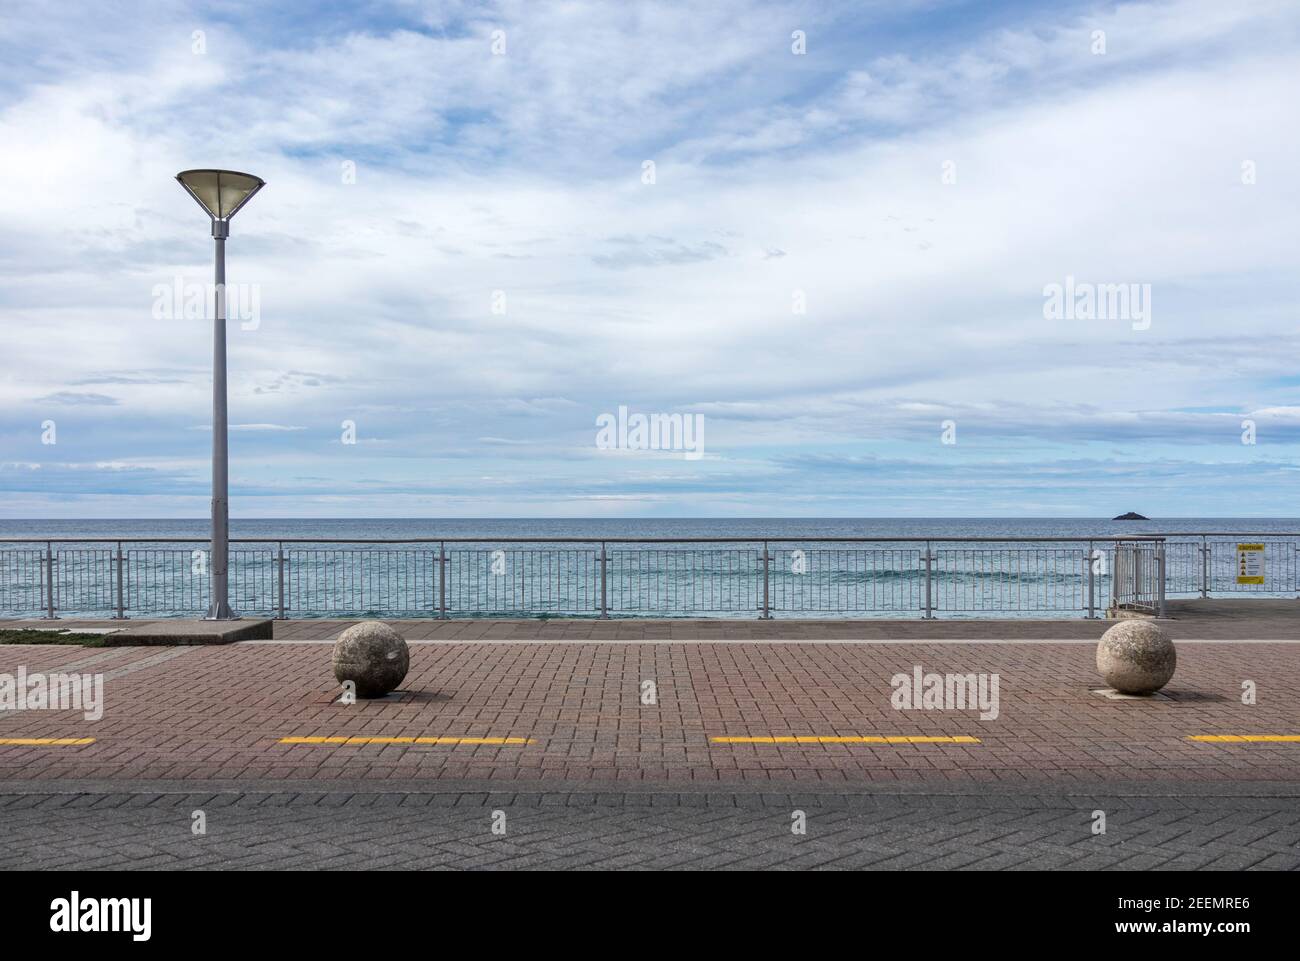 Esplanade en St Clair, Dunedin, Nueva Zelanda con un solo poste de luz y 2 bolardos esféricos de hormigón contra un fondo de mar y cielo azul, copyspace Foto de stock